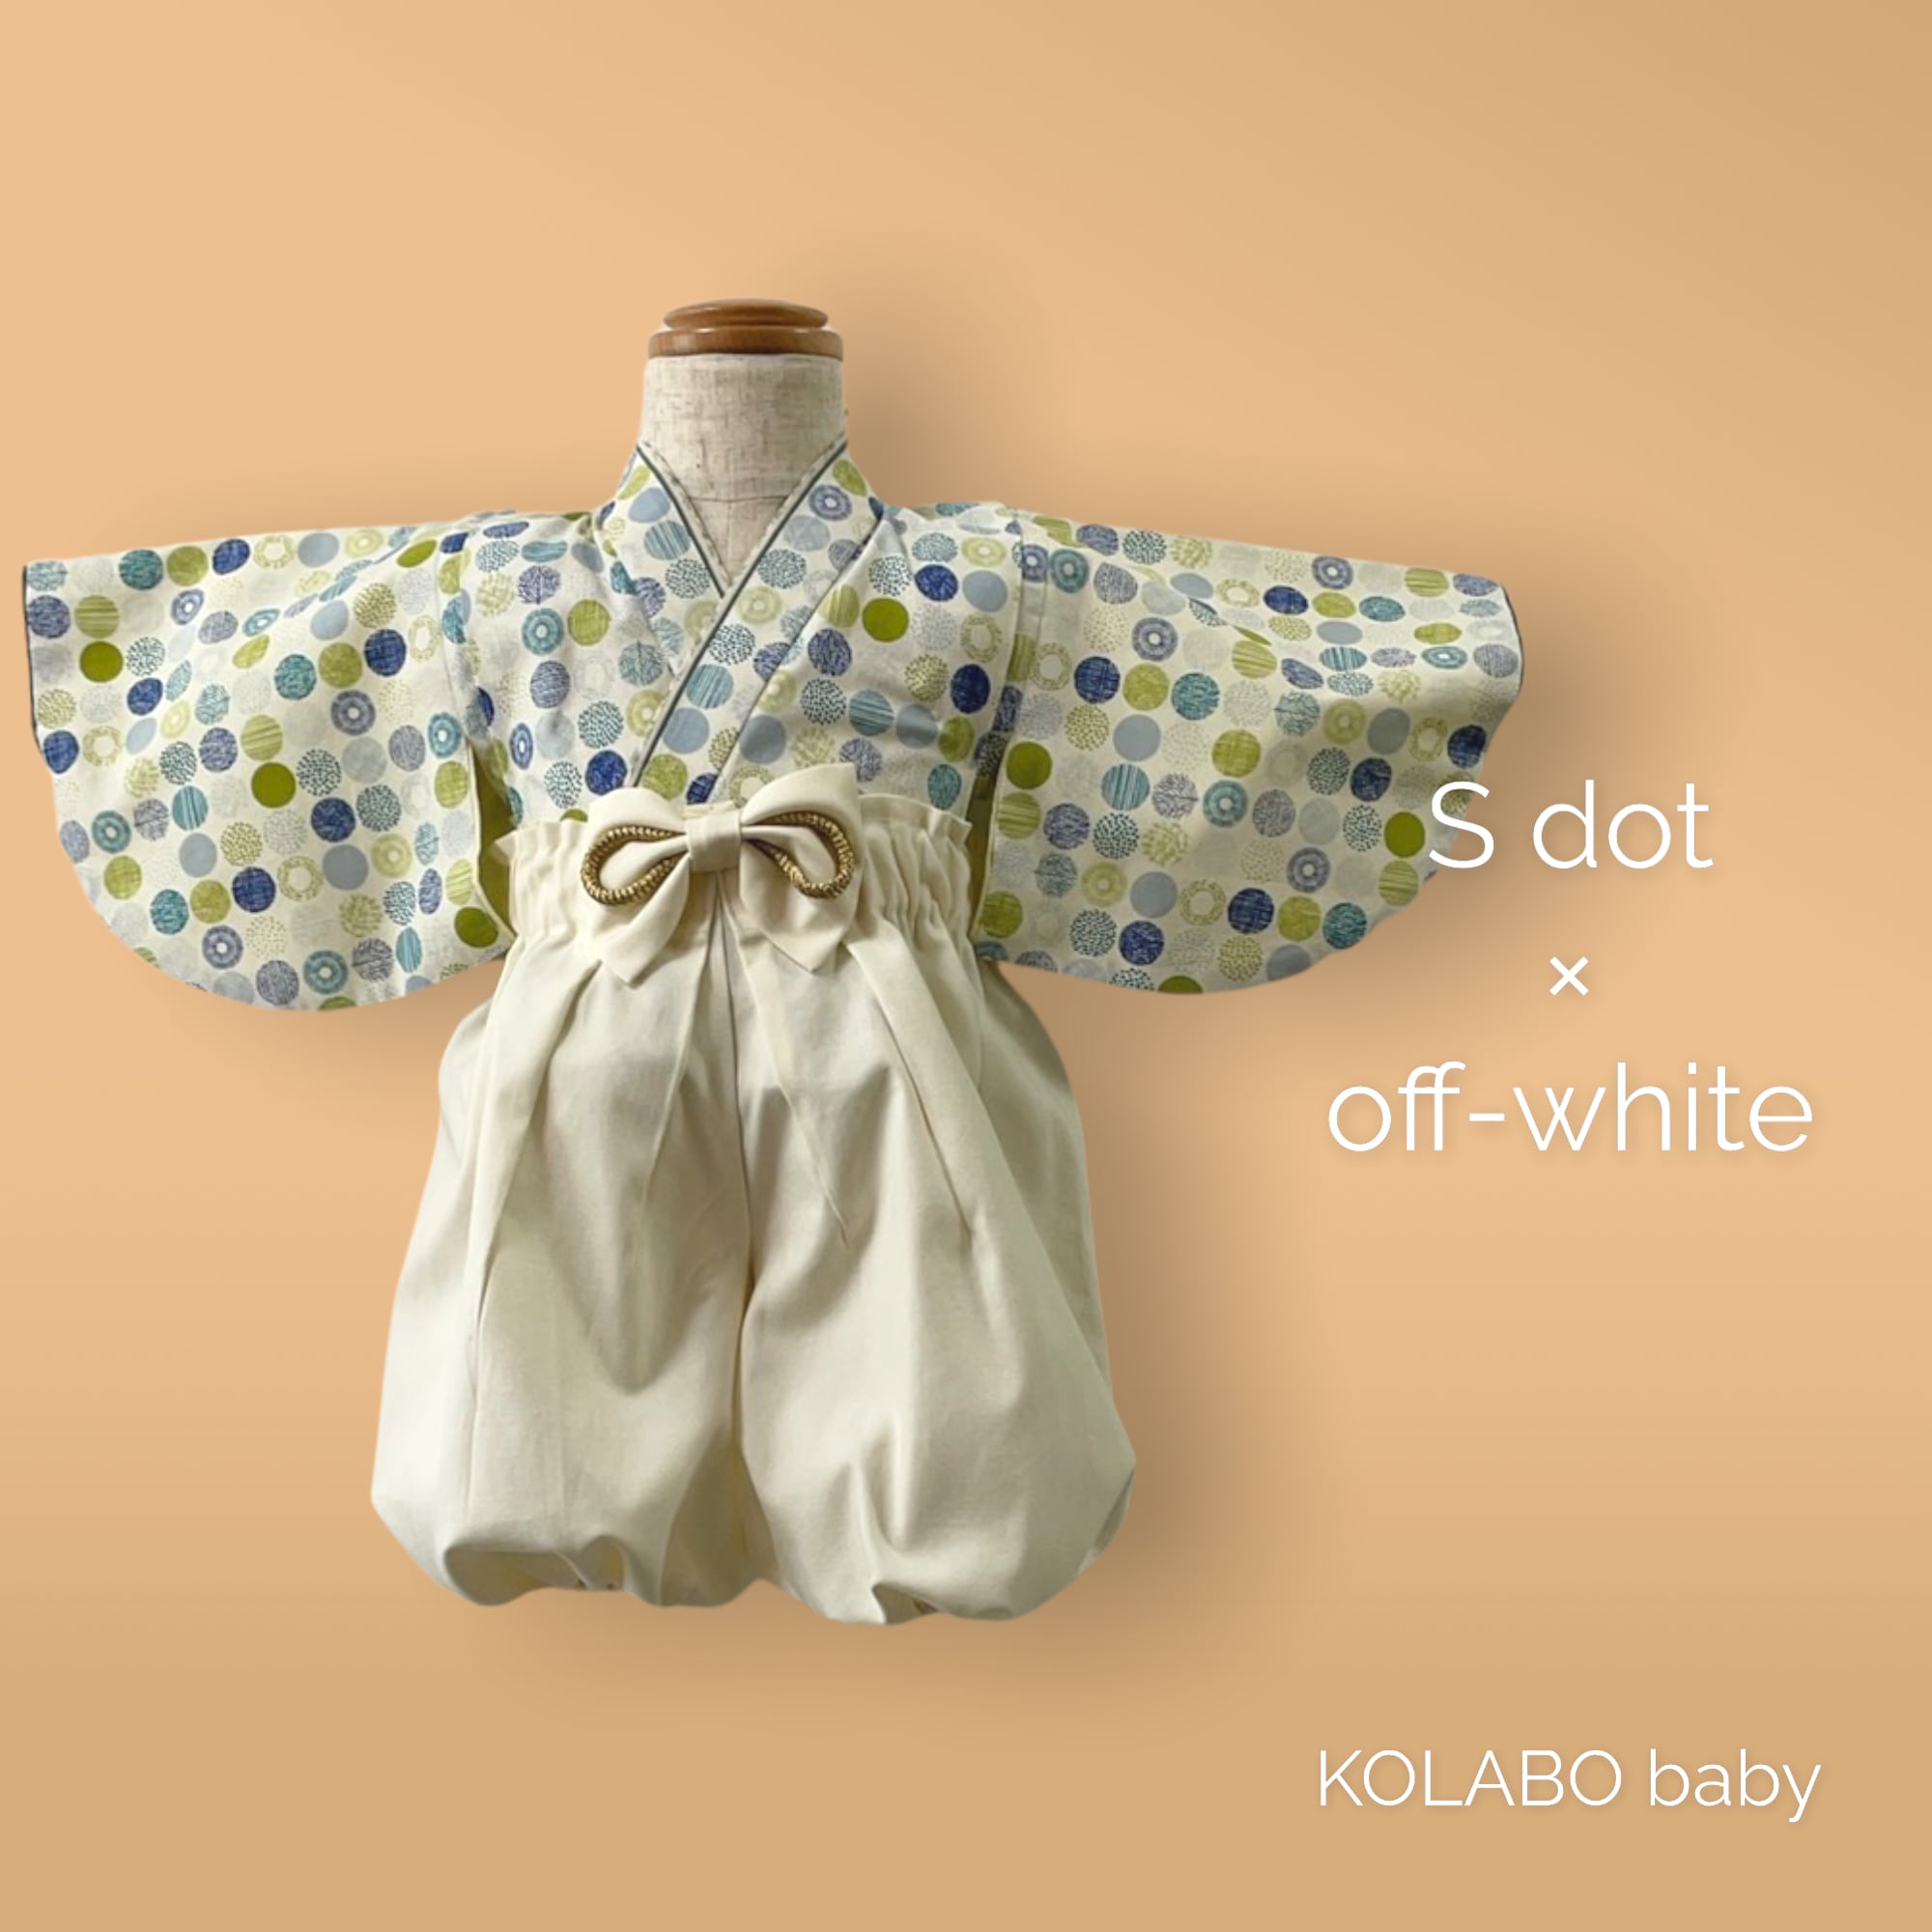 ベビー袴 S dot ♡ | KOLABO baby コラボベビー